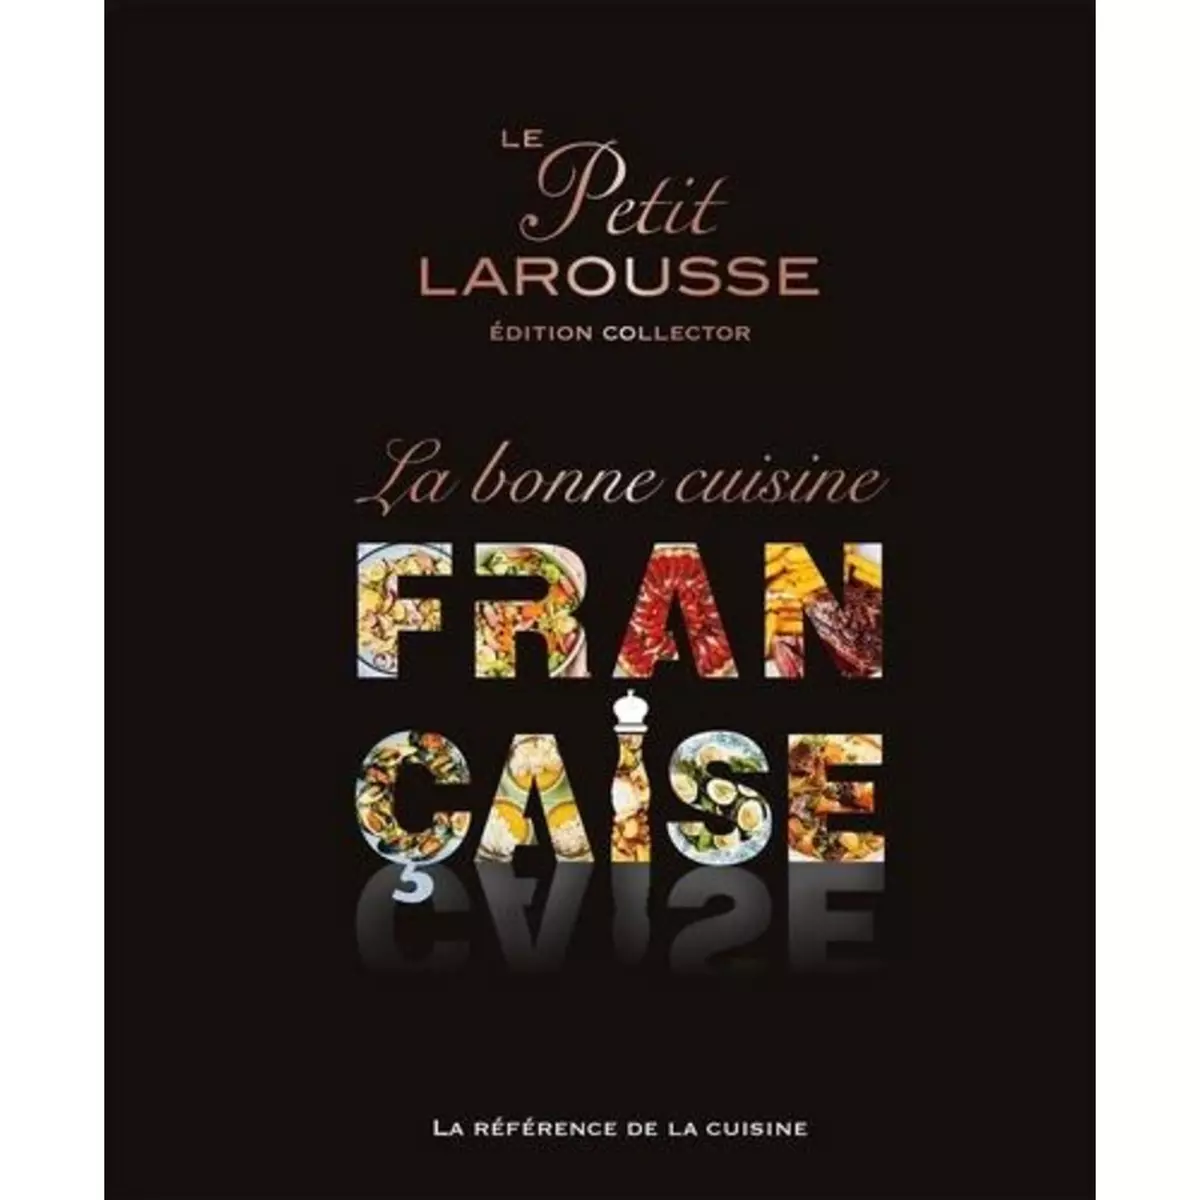  LE PETIT LAROUSSE, LA BONNE CUISINE FRANCAISE. EDITION COLLECTOR, Larousse